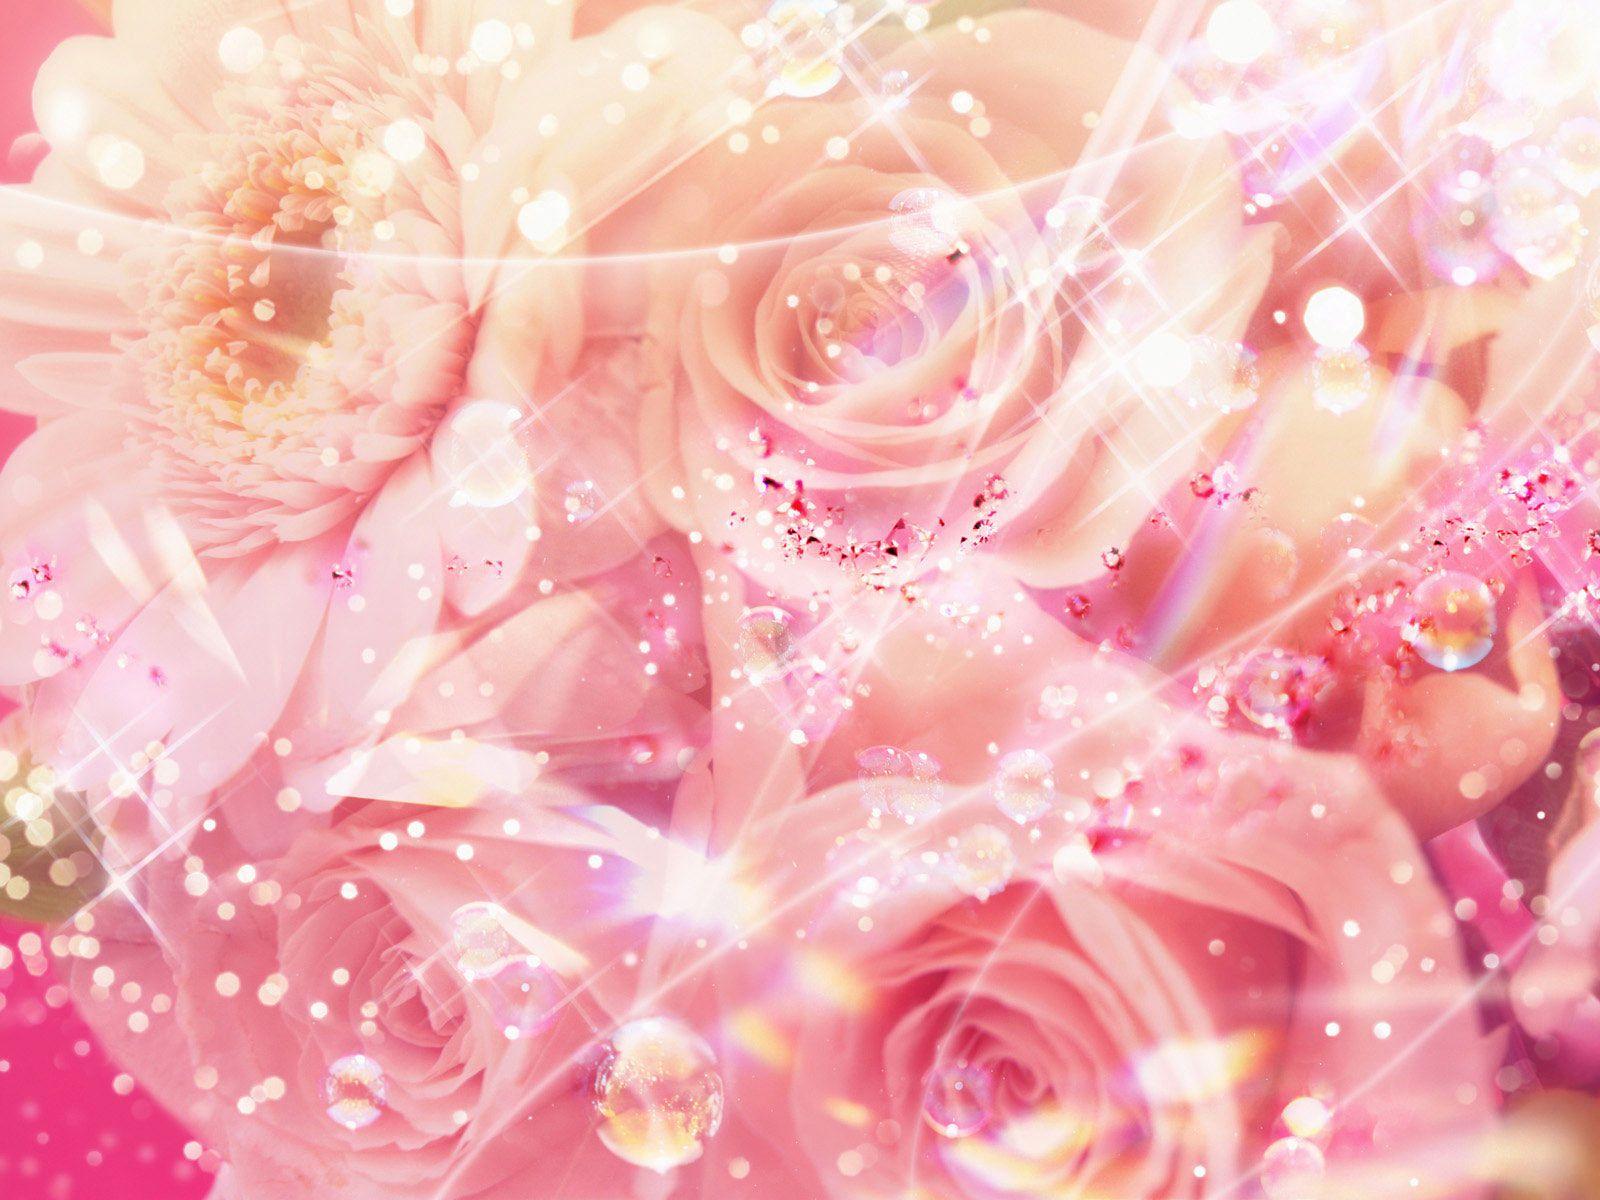 Cute Pink Roses Wallpaper